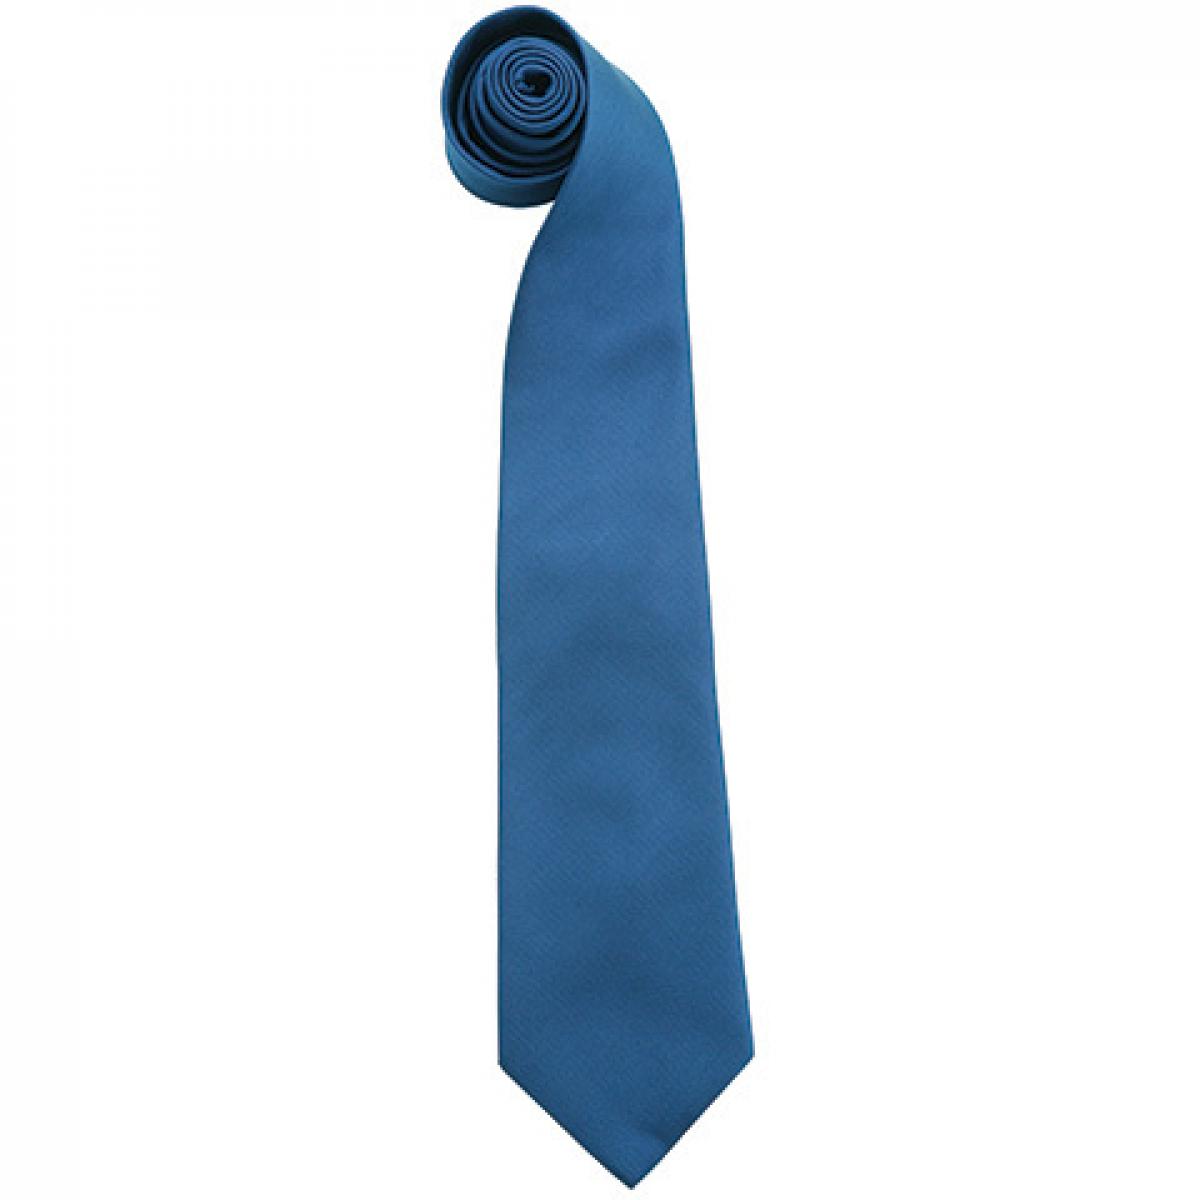 Hersteller: Premier Workwear Herstellernummer: PR765 Artikelbezeichnung: Krawatte Uni-Fashion / Colours Farbe: Royal (ca. Pantone 661C)